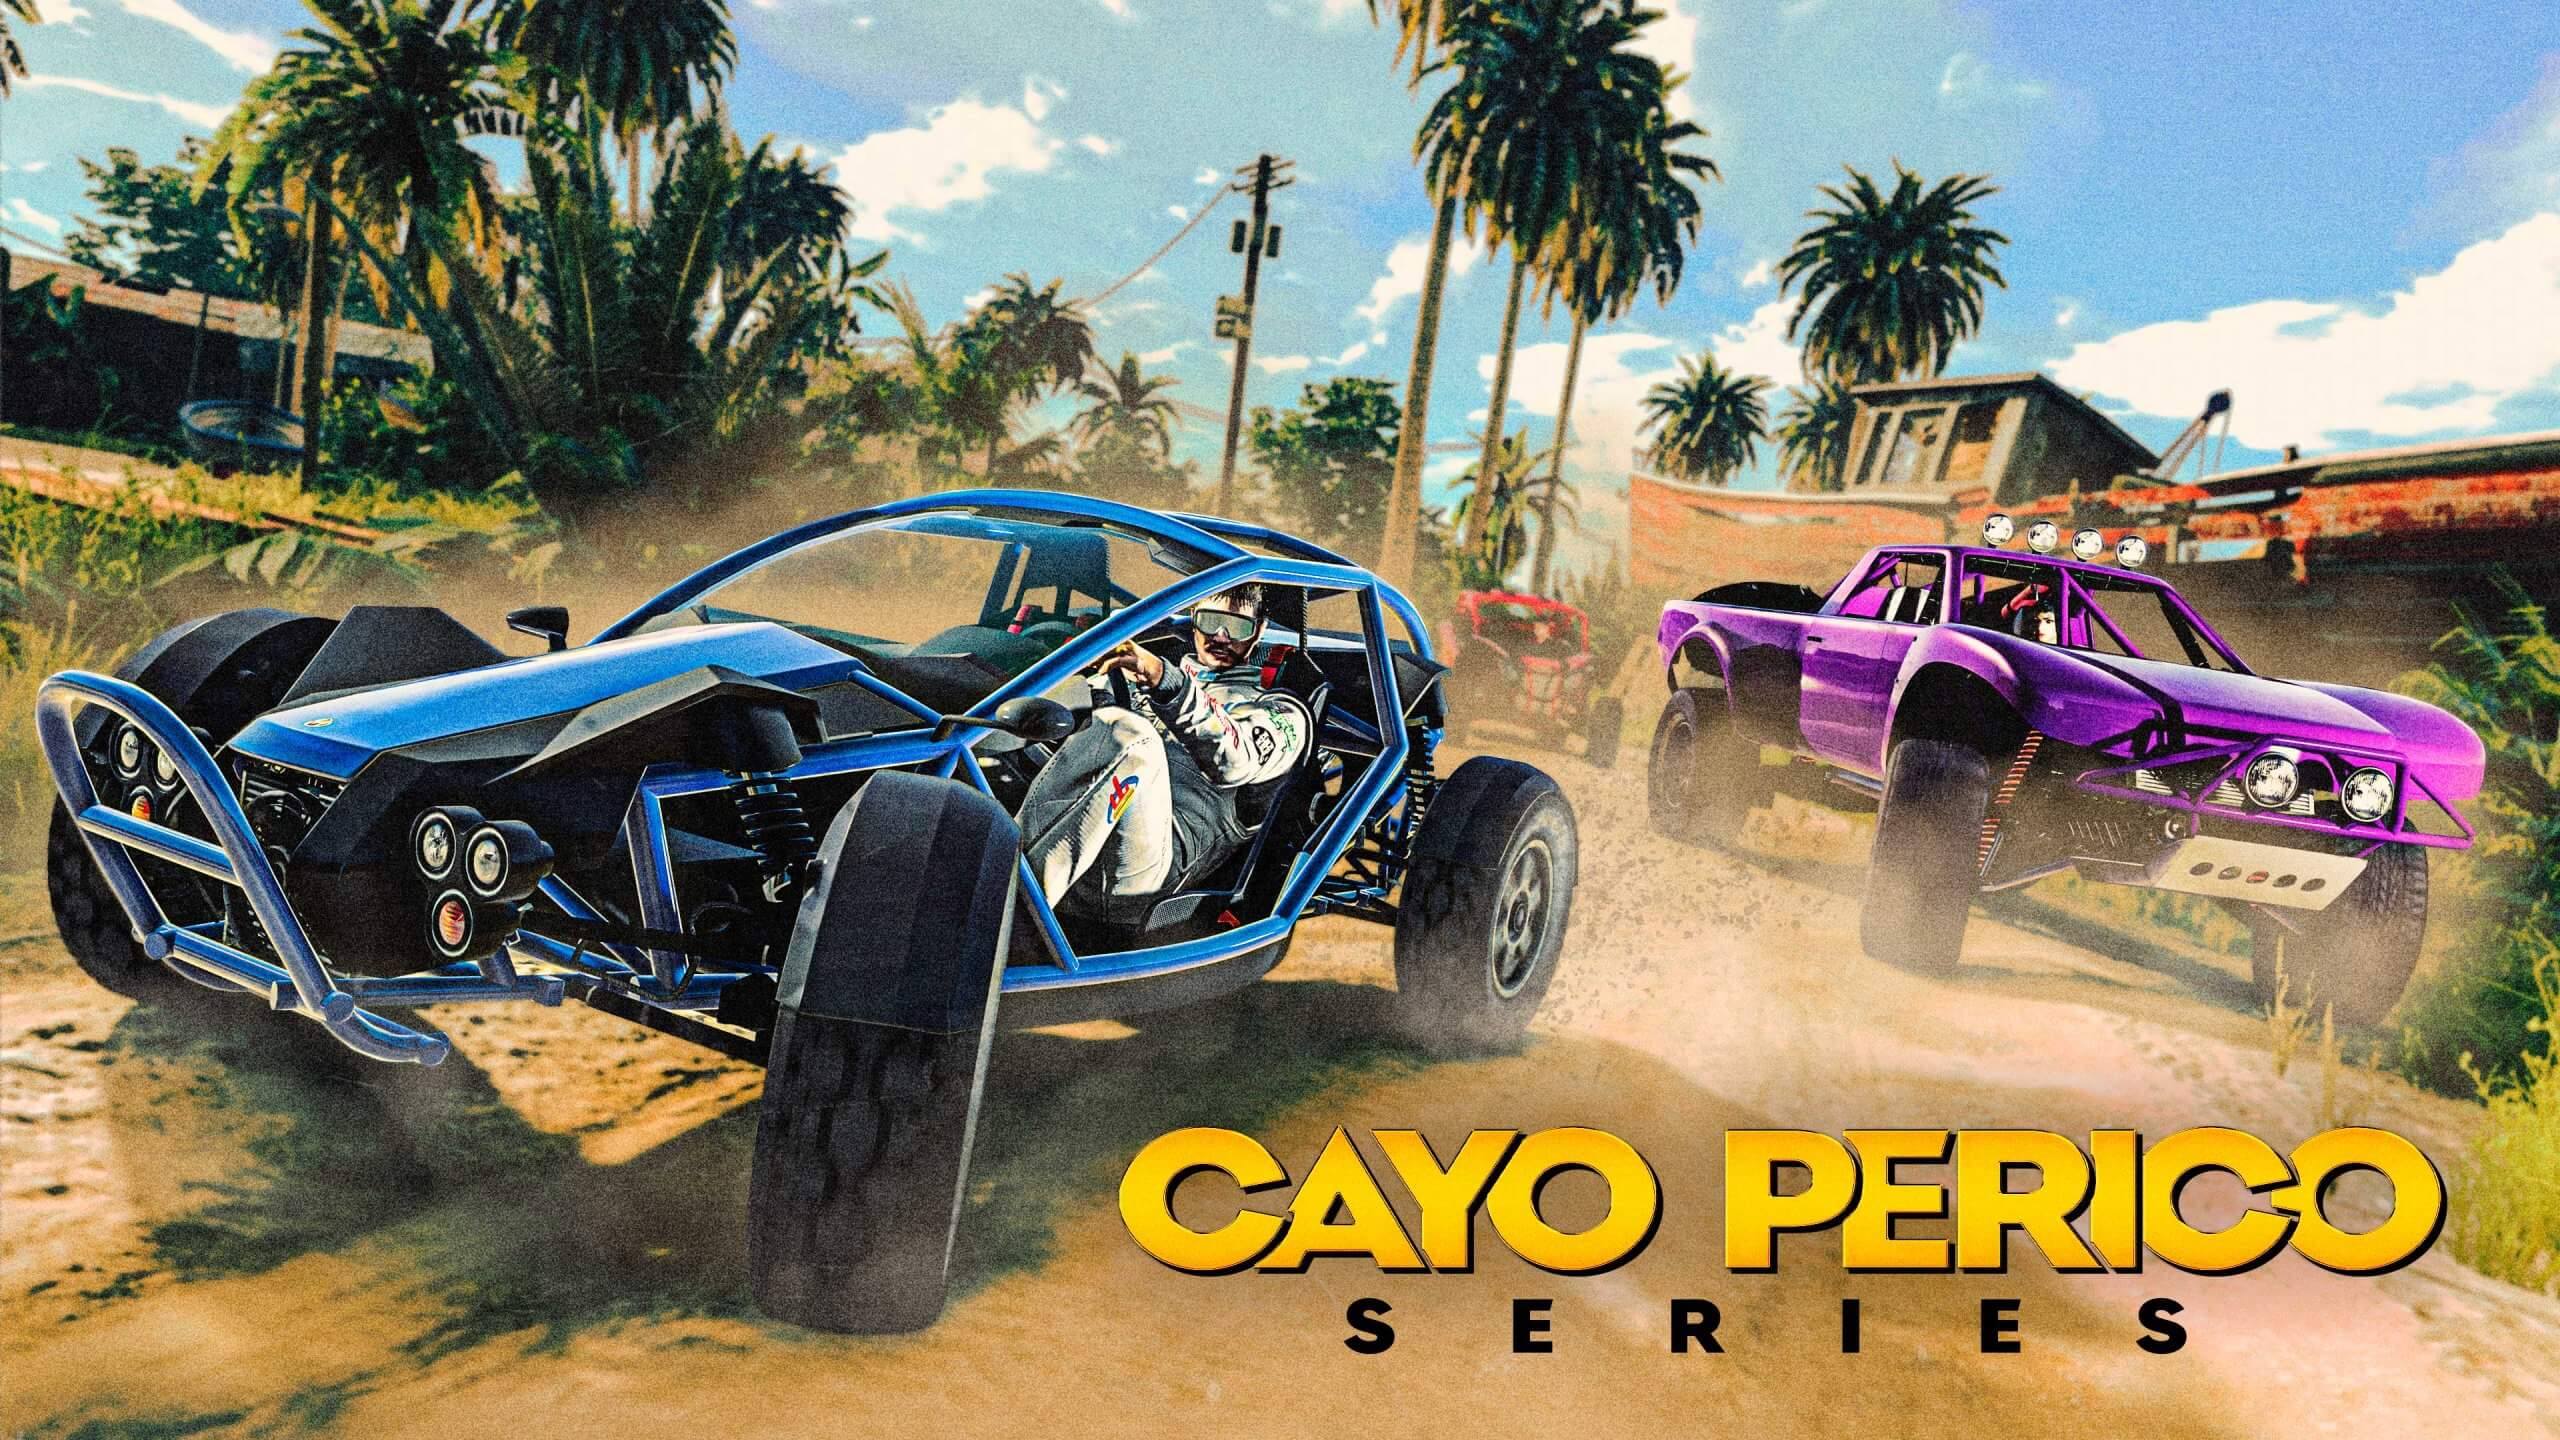 Las carreras llegarán a Cayo Perico esta semana en GTA Online